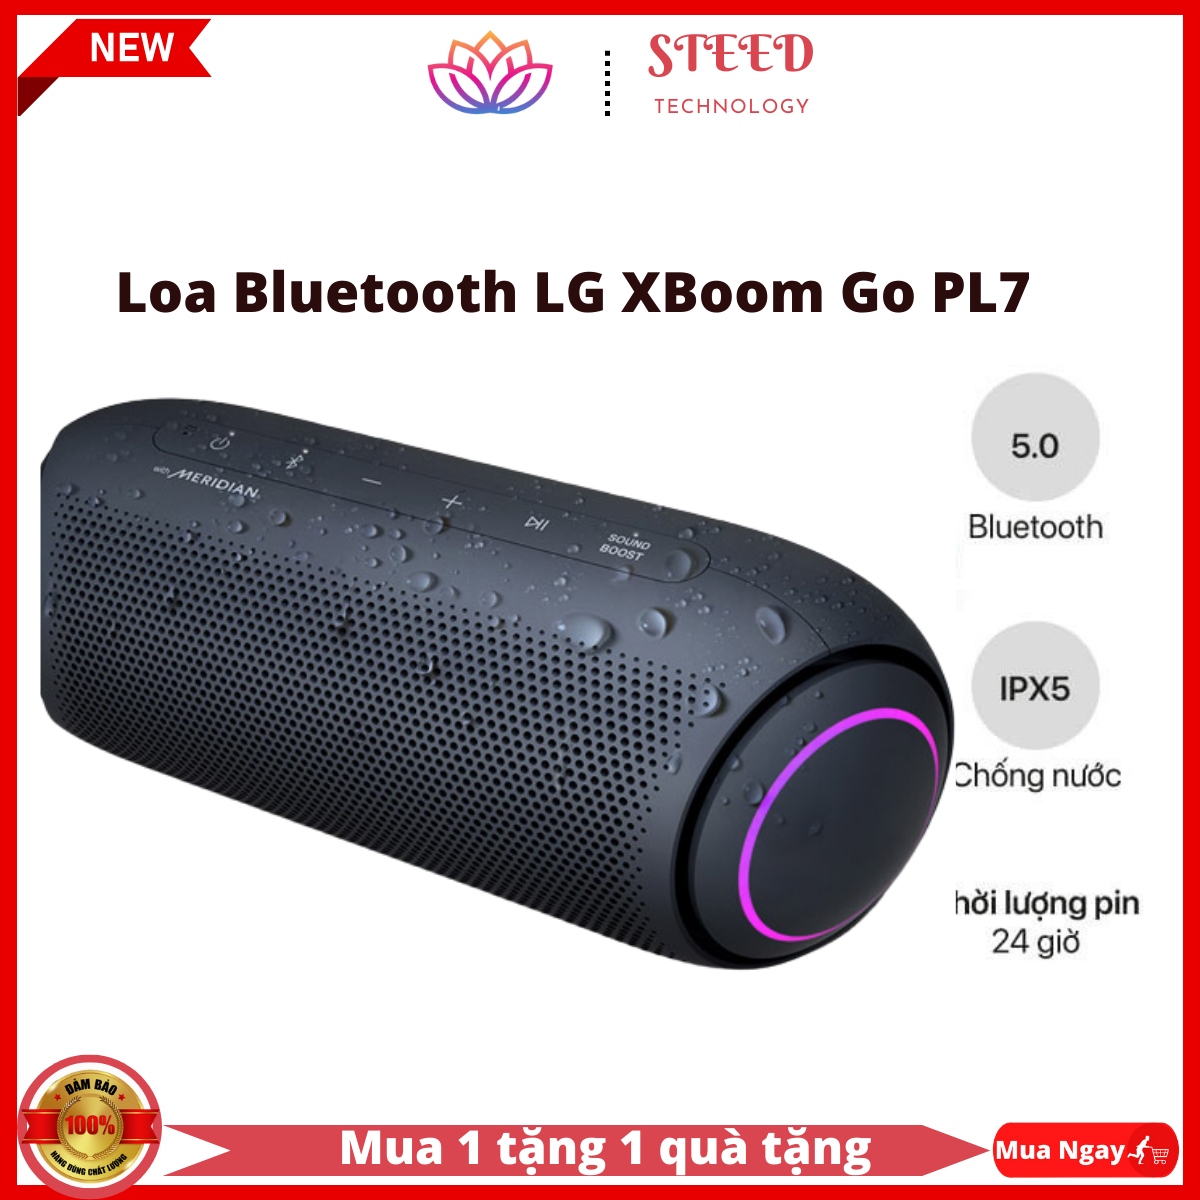 Loa Bluetooth  . Loa LG Xboom Go PL7 với công nghệ Meridian Âm thanh 30W Âm trầm hành động kép Thời lượng pin đến cả ngày (24 tiếng) Chế độ đèn nhiều màu , chống nước IPX5 , Loa Bluetooth LG XBoom Go PL7 Chính hãng bảo hành 1 năm